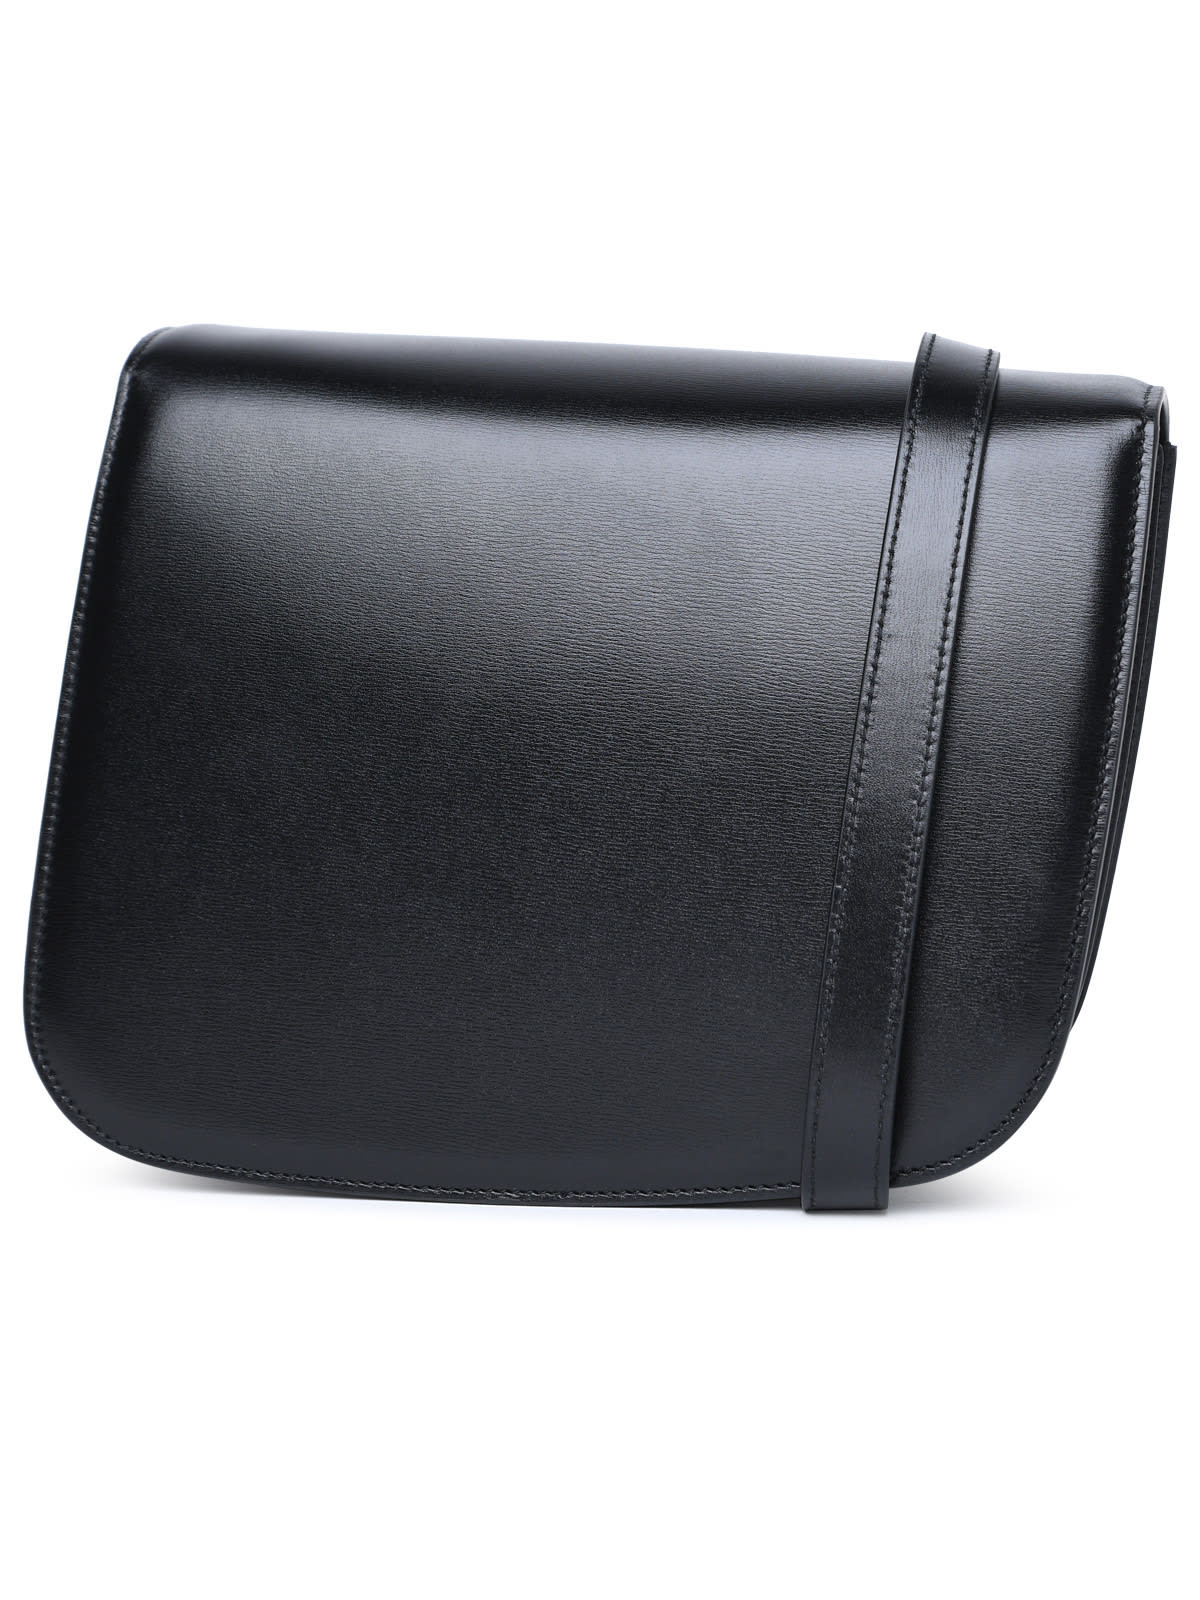 Shop Ferragamo Black Pomellato Calf Leather Bag